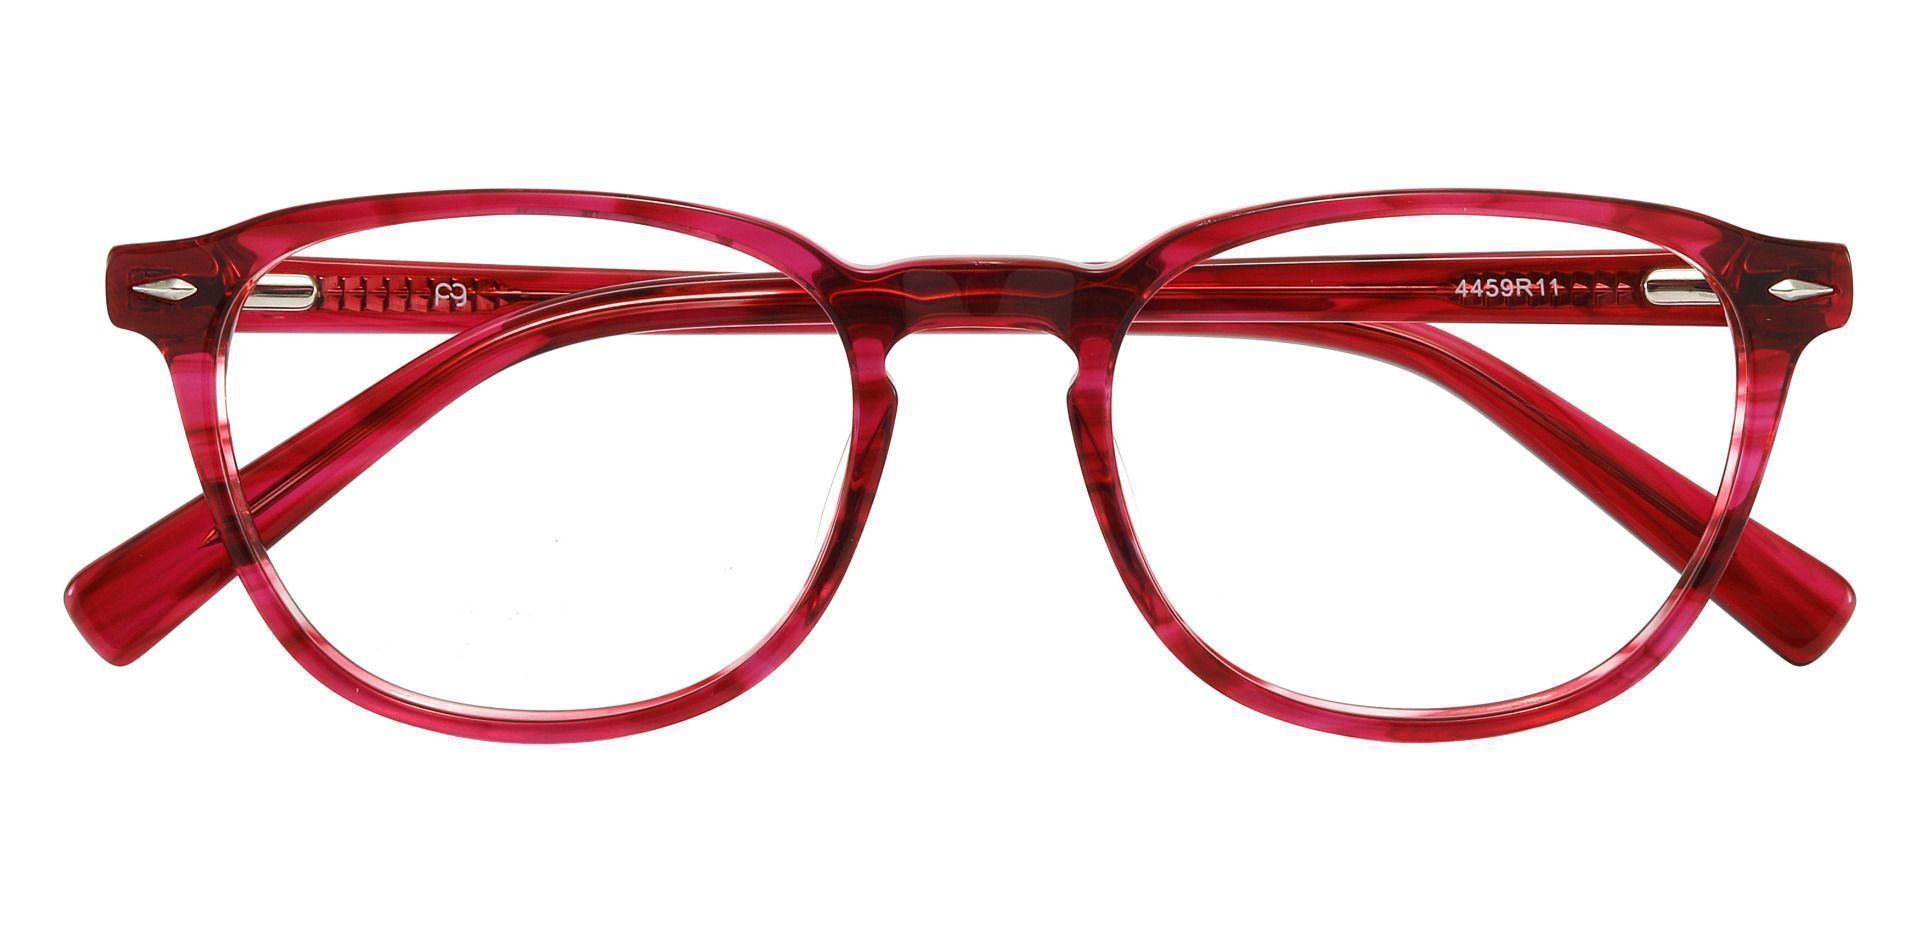 Marilla Oval Prescription Glasses - Red